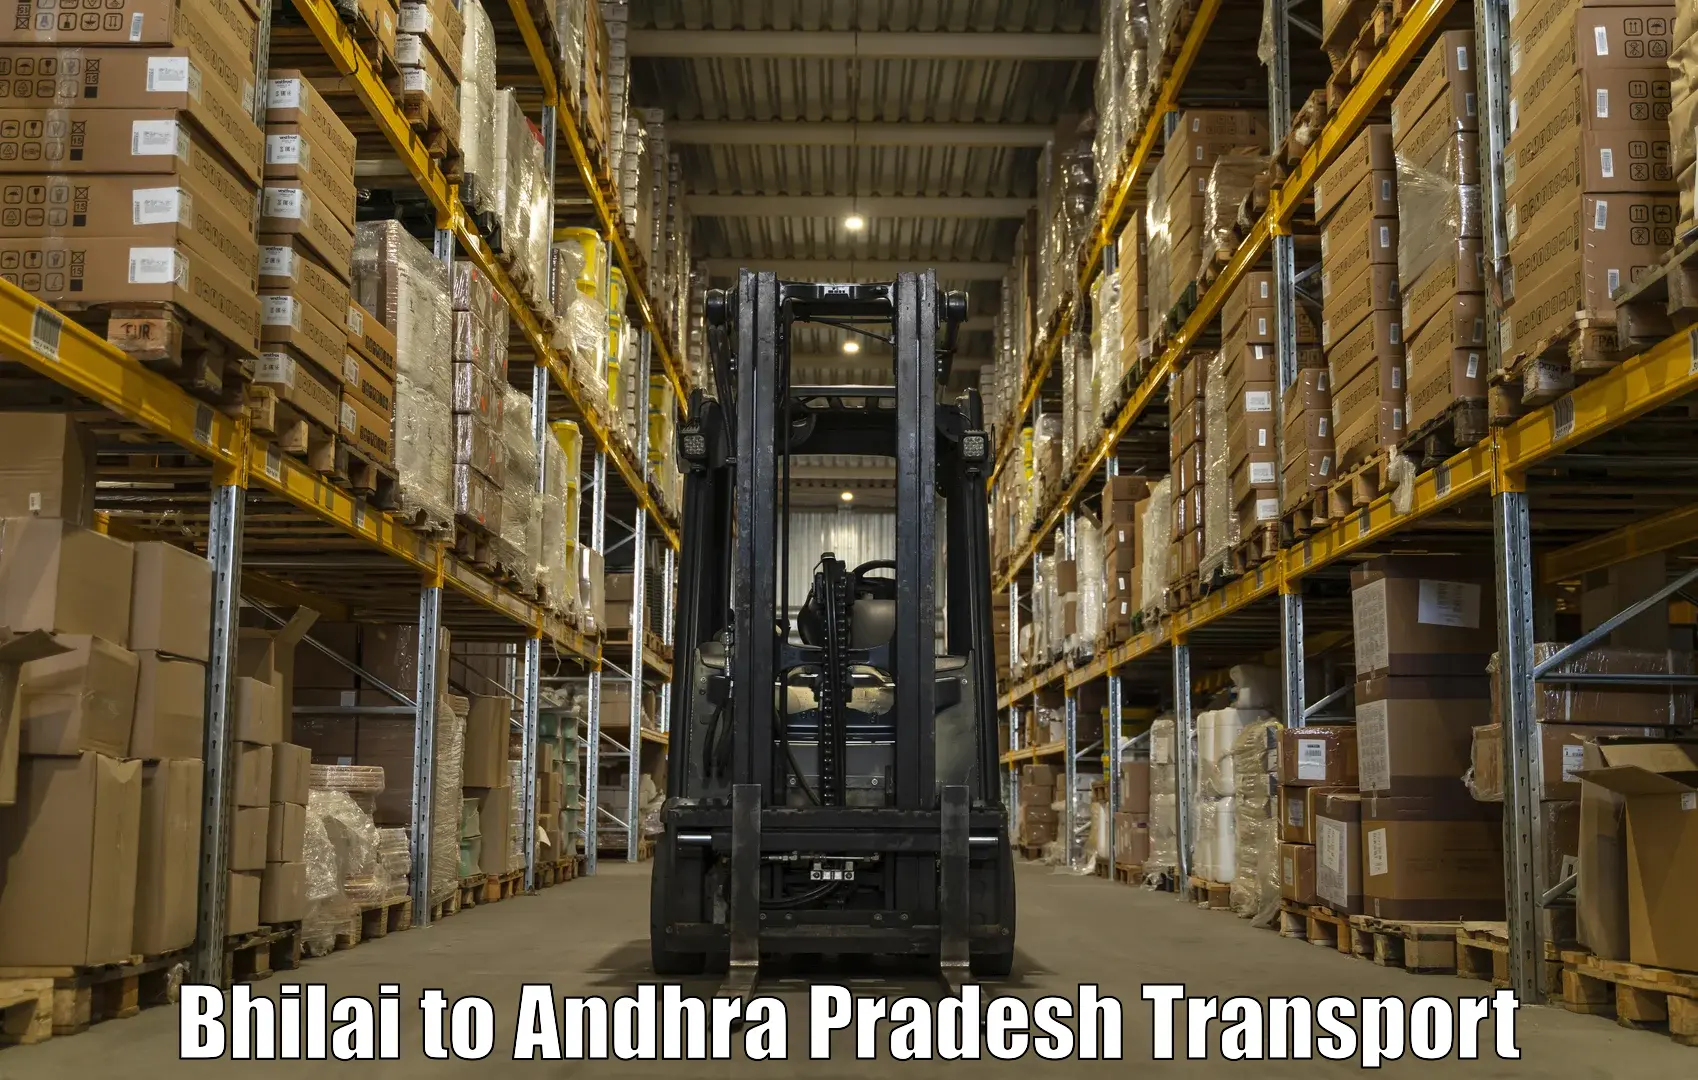 Cargo transport services Bhilai to Chodavaram